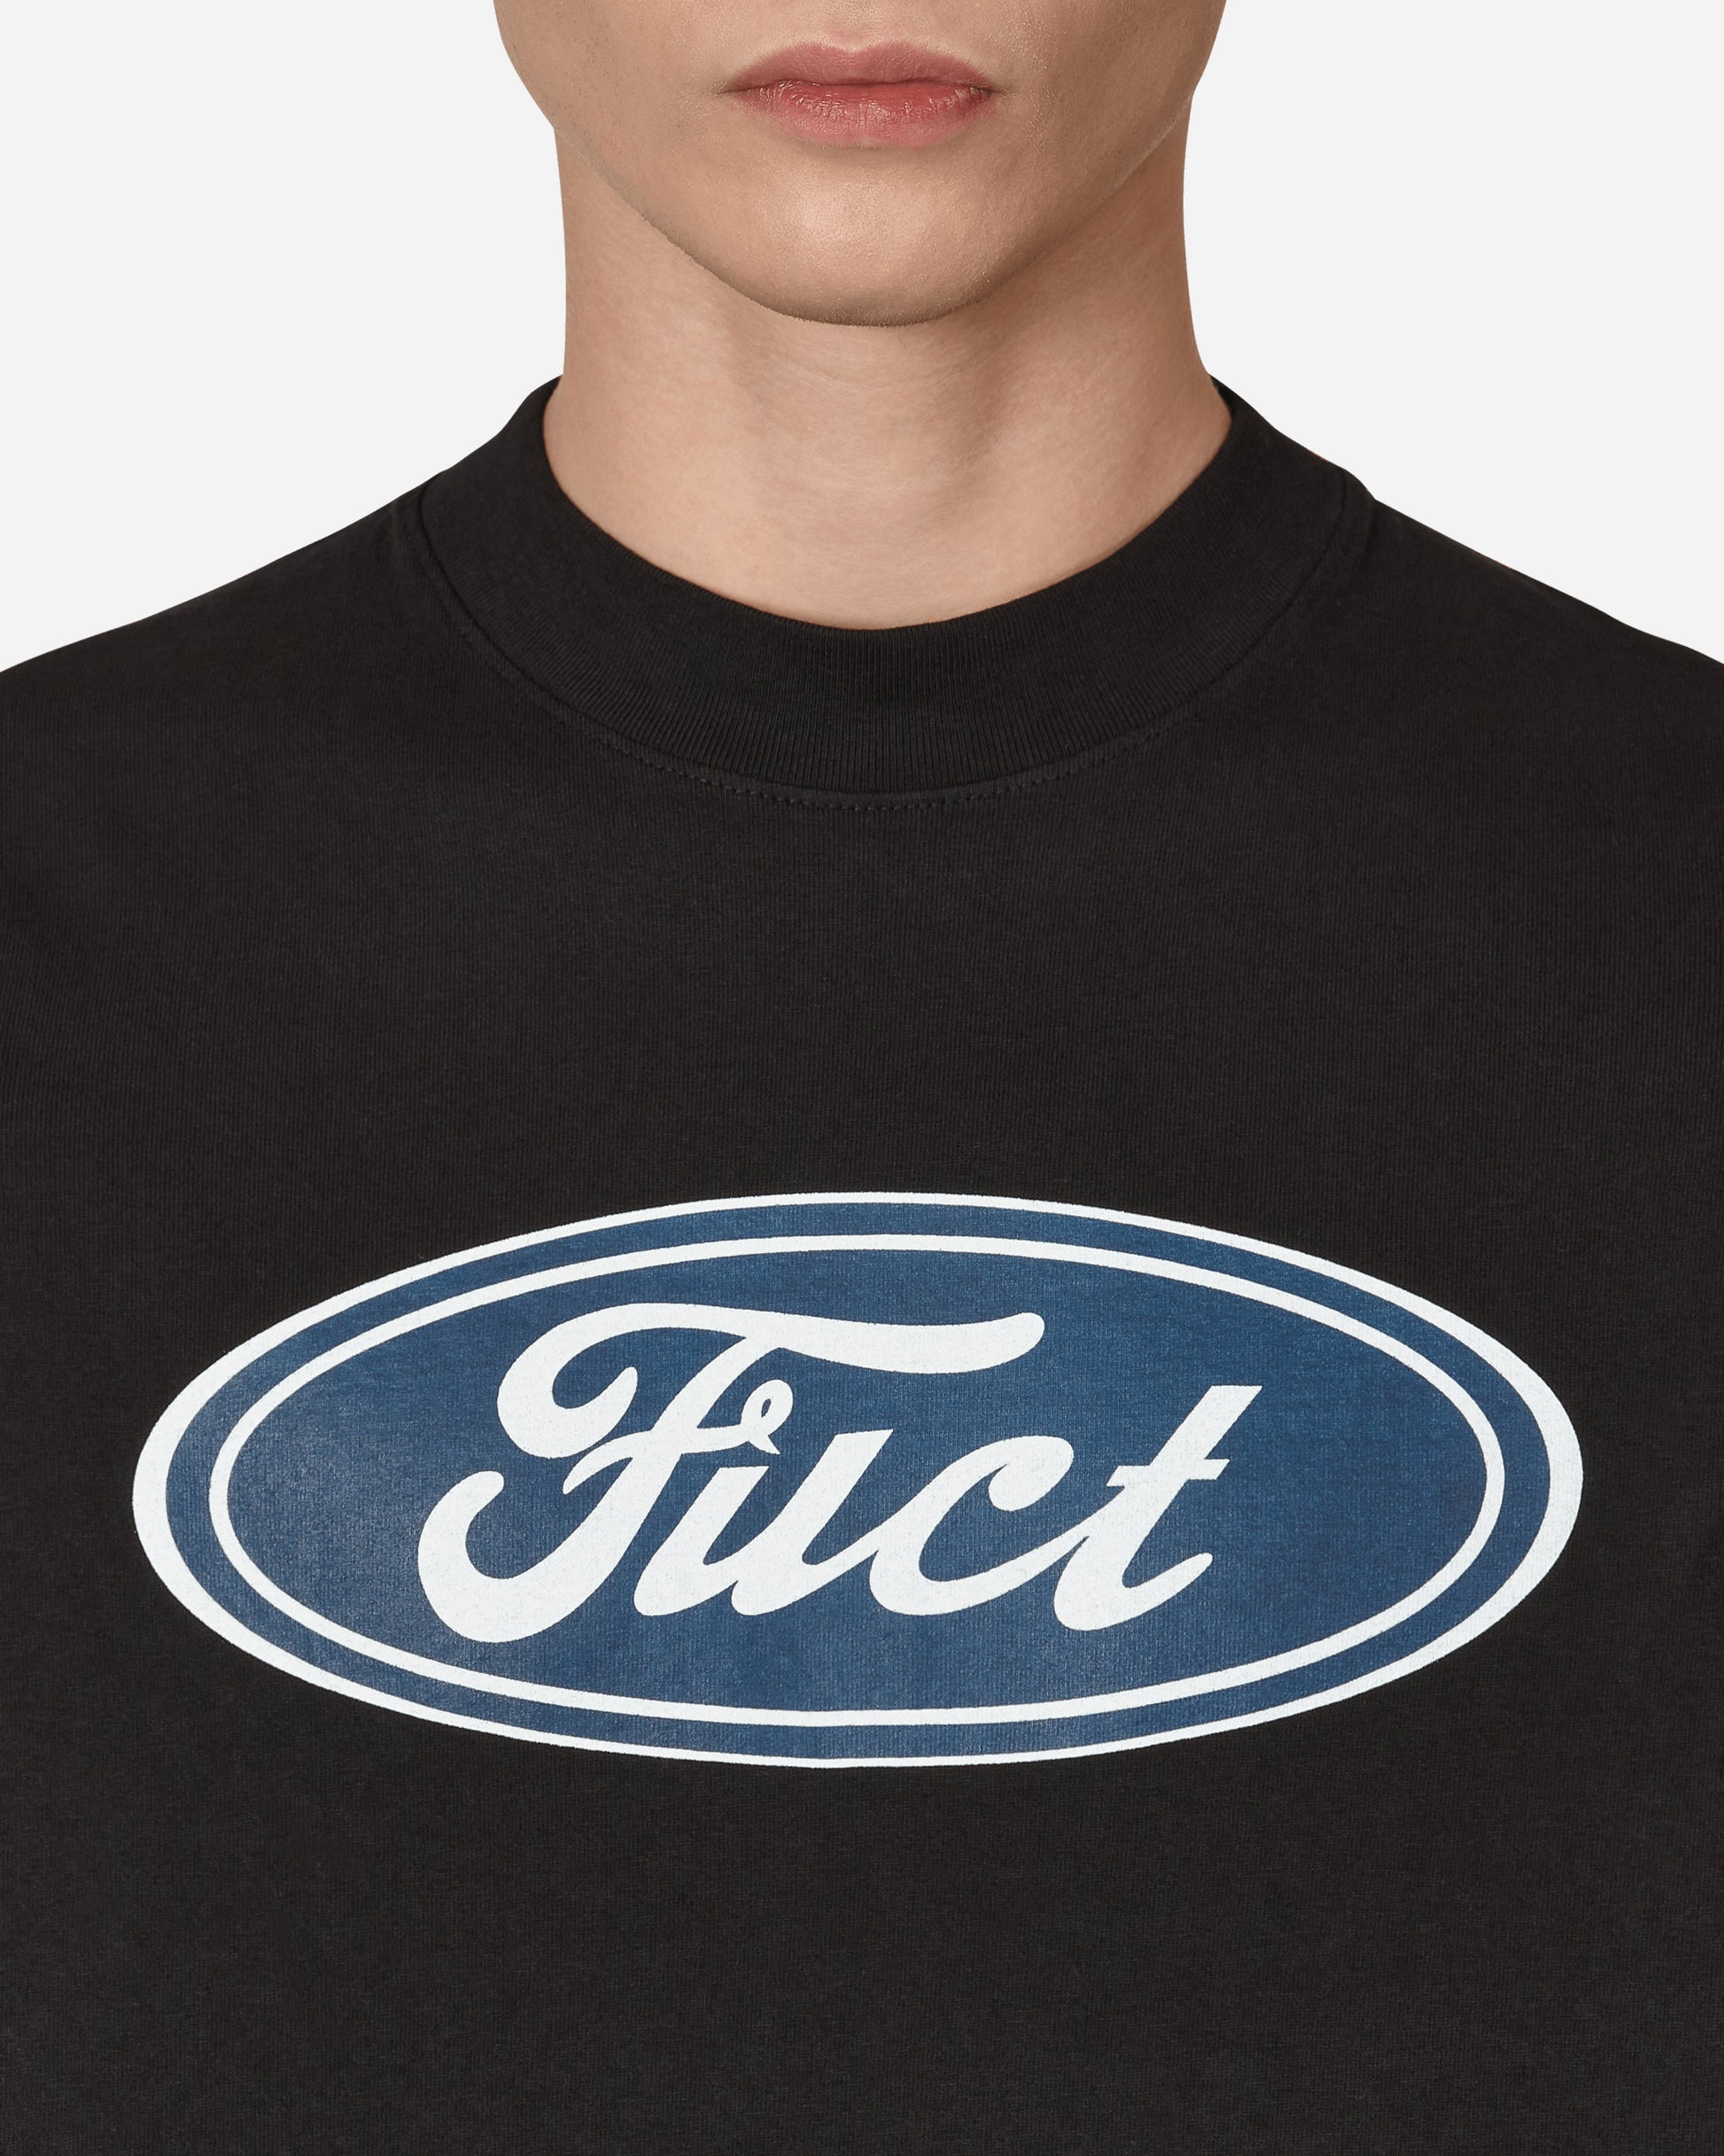 Fuct Fuct Oval Logo Tee Black T-Shirts Shortsleeve 1801GDT 1